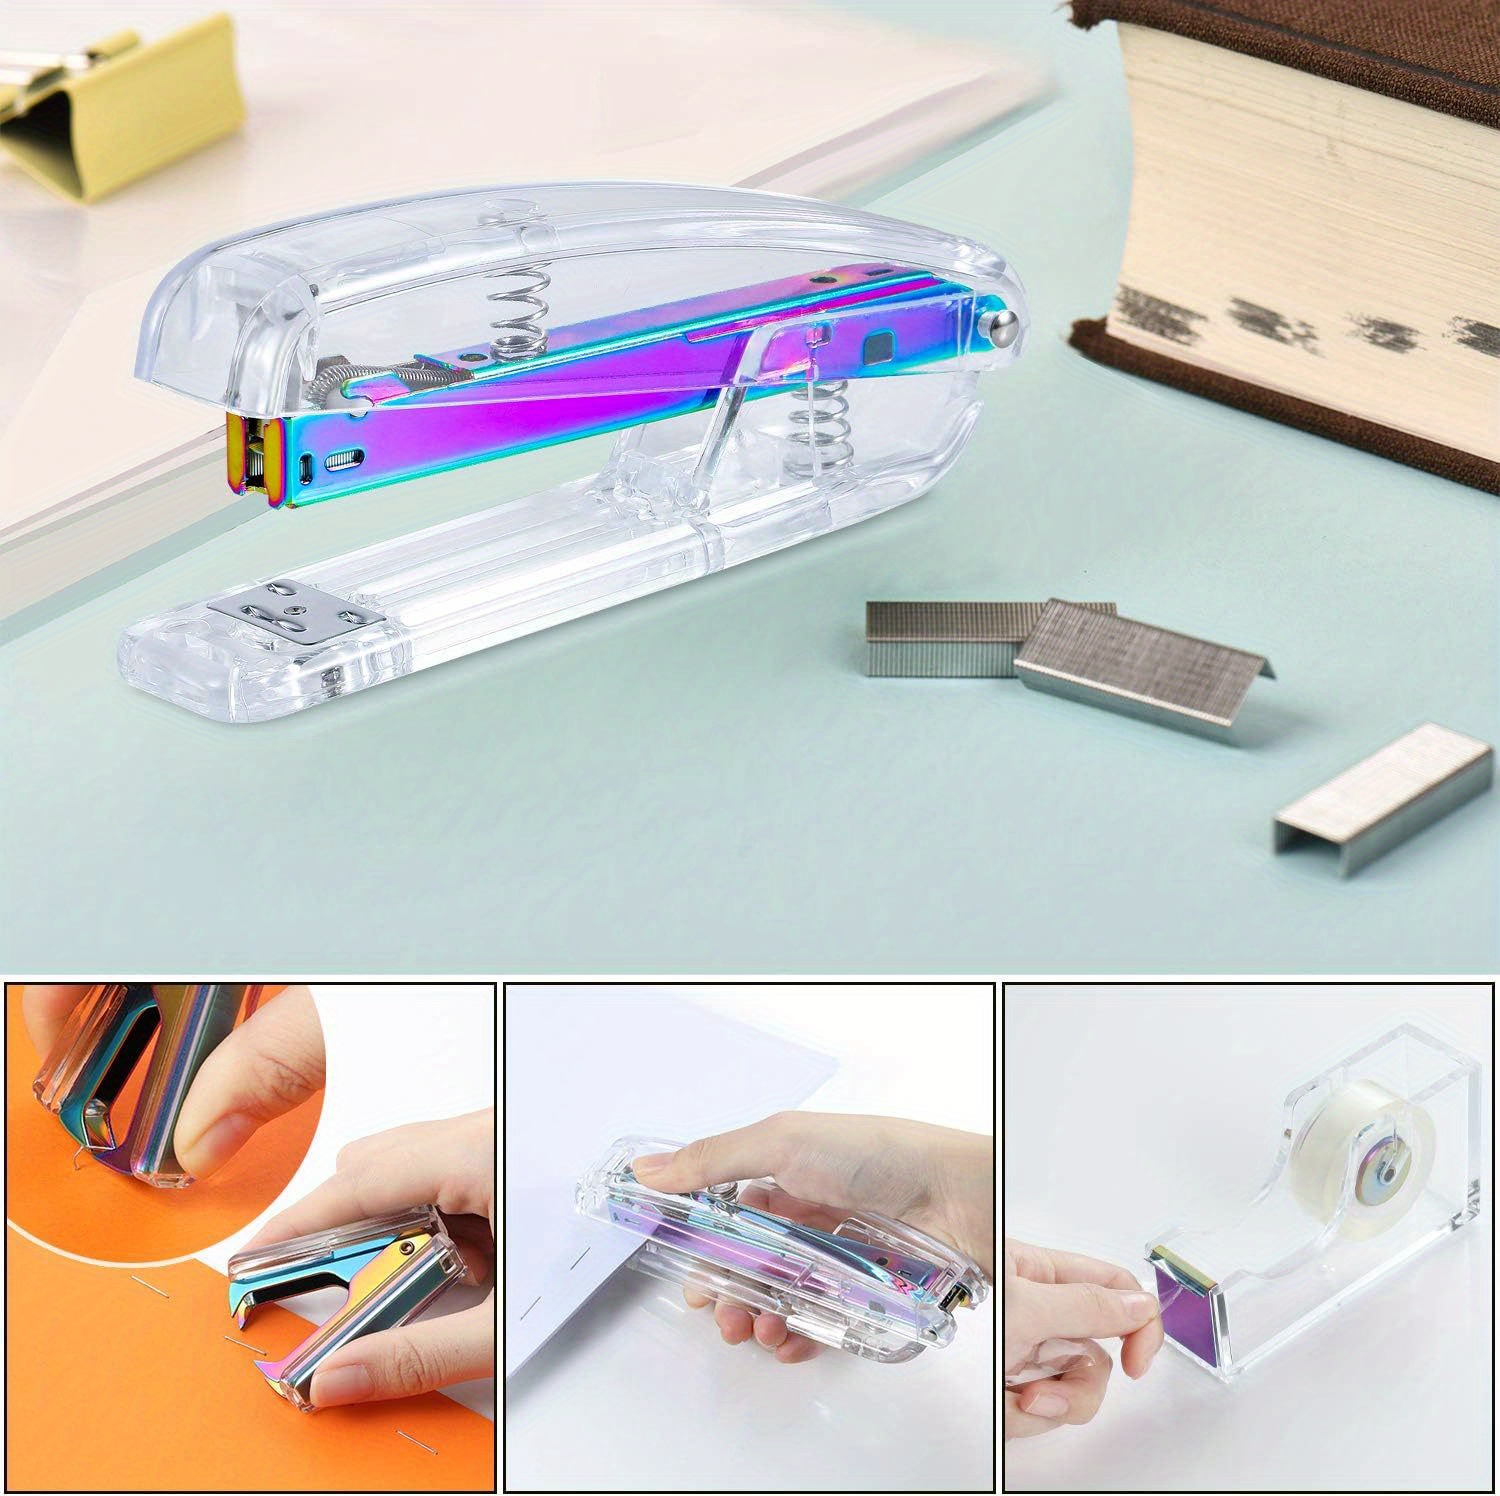 Desk Accessories Kit Green Stapler And Tape Dispenser Set, Acrylic